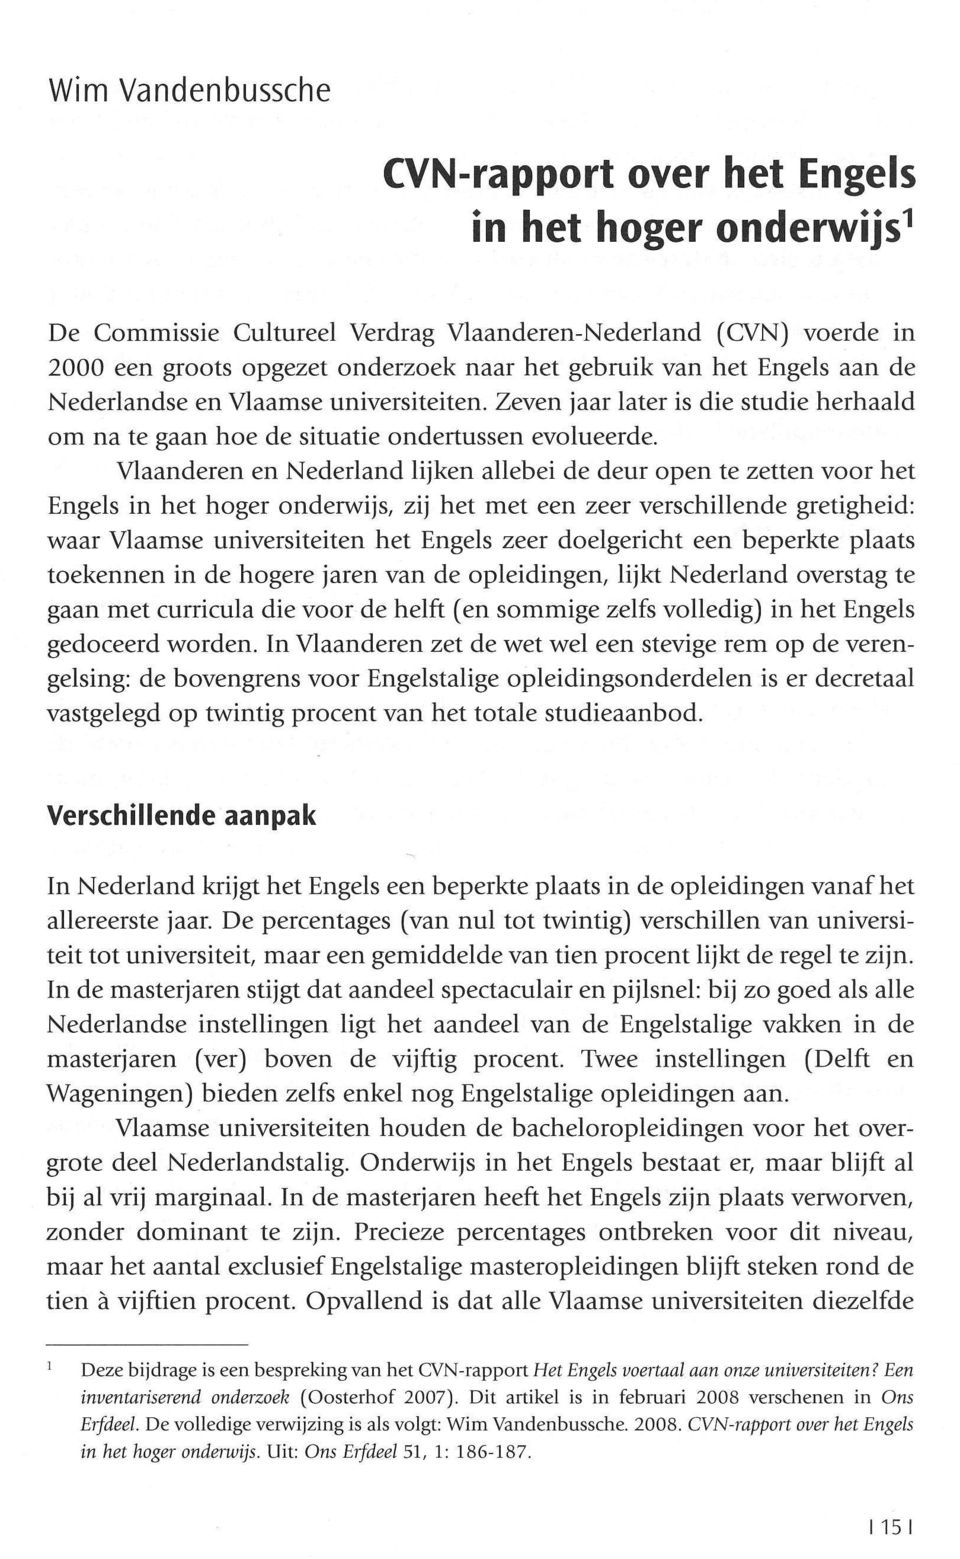 Vlaanderen en Nederland lijken allebei de deur open te zetten voor het Engels in het hoger onderwijs, zij het met een zeer verschillende gretigheid: waar Vlaamse universiteiten het Engels zeer